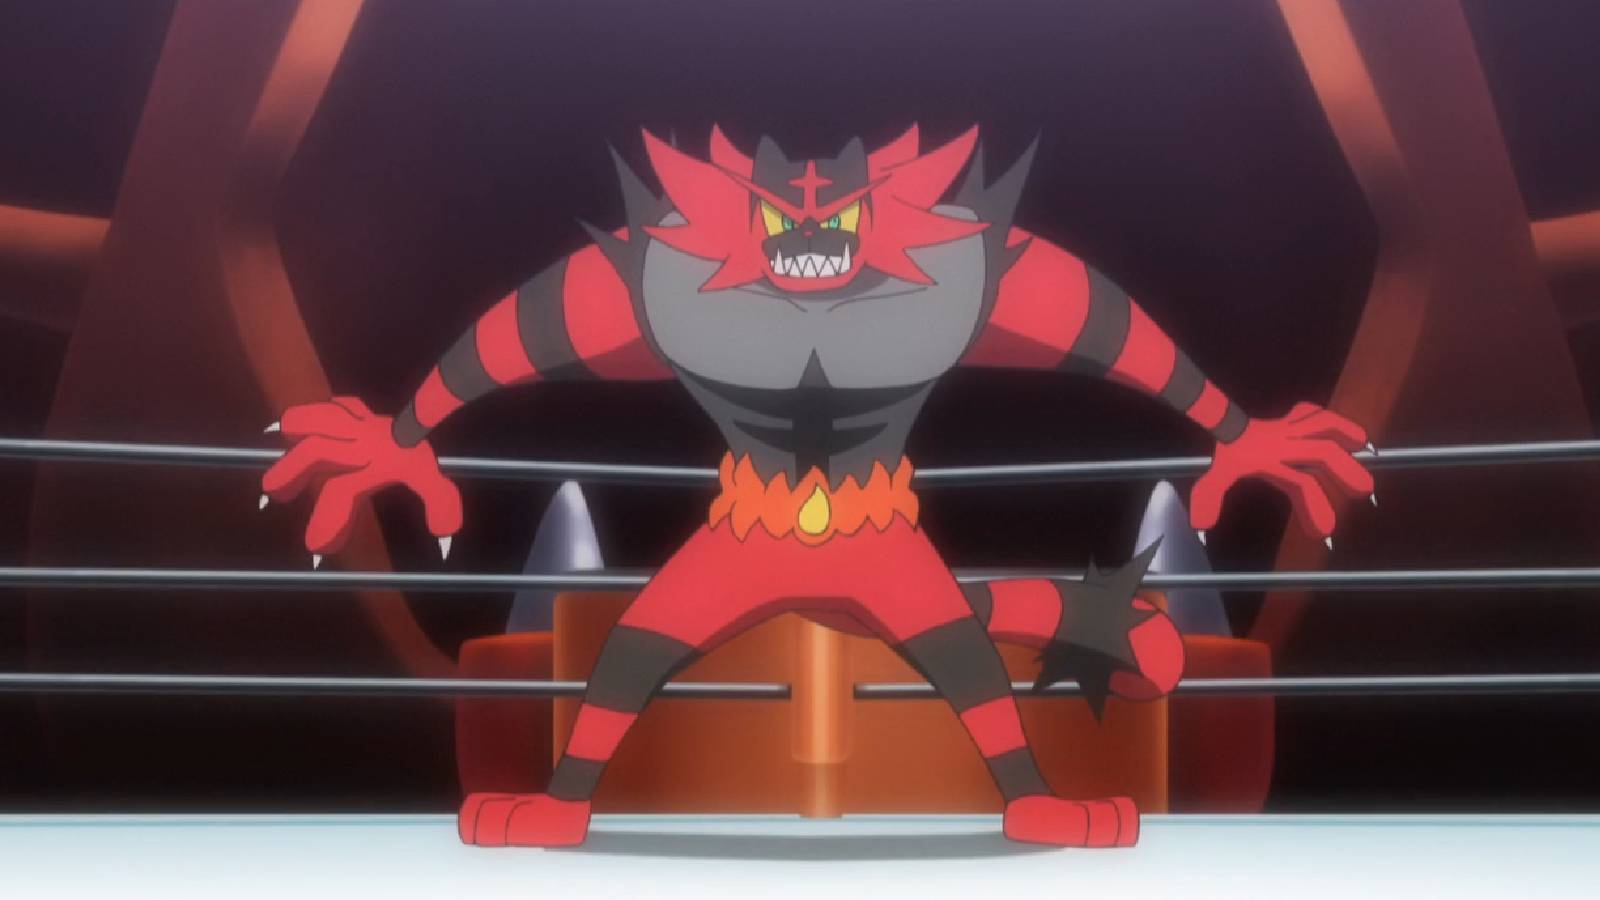 The Pokemon Incineroar stands in a wrestling ring